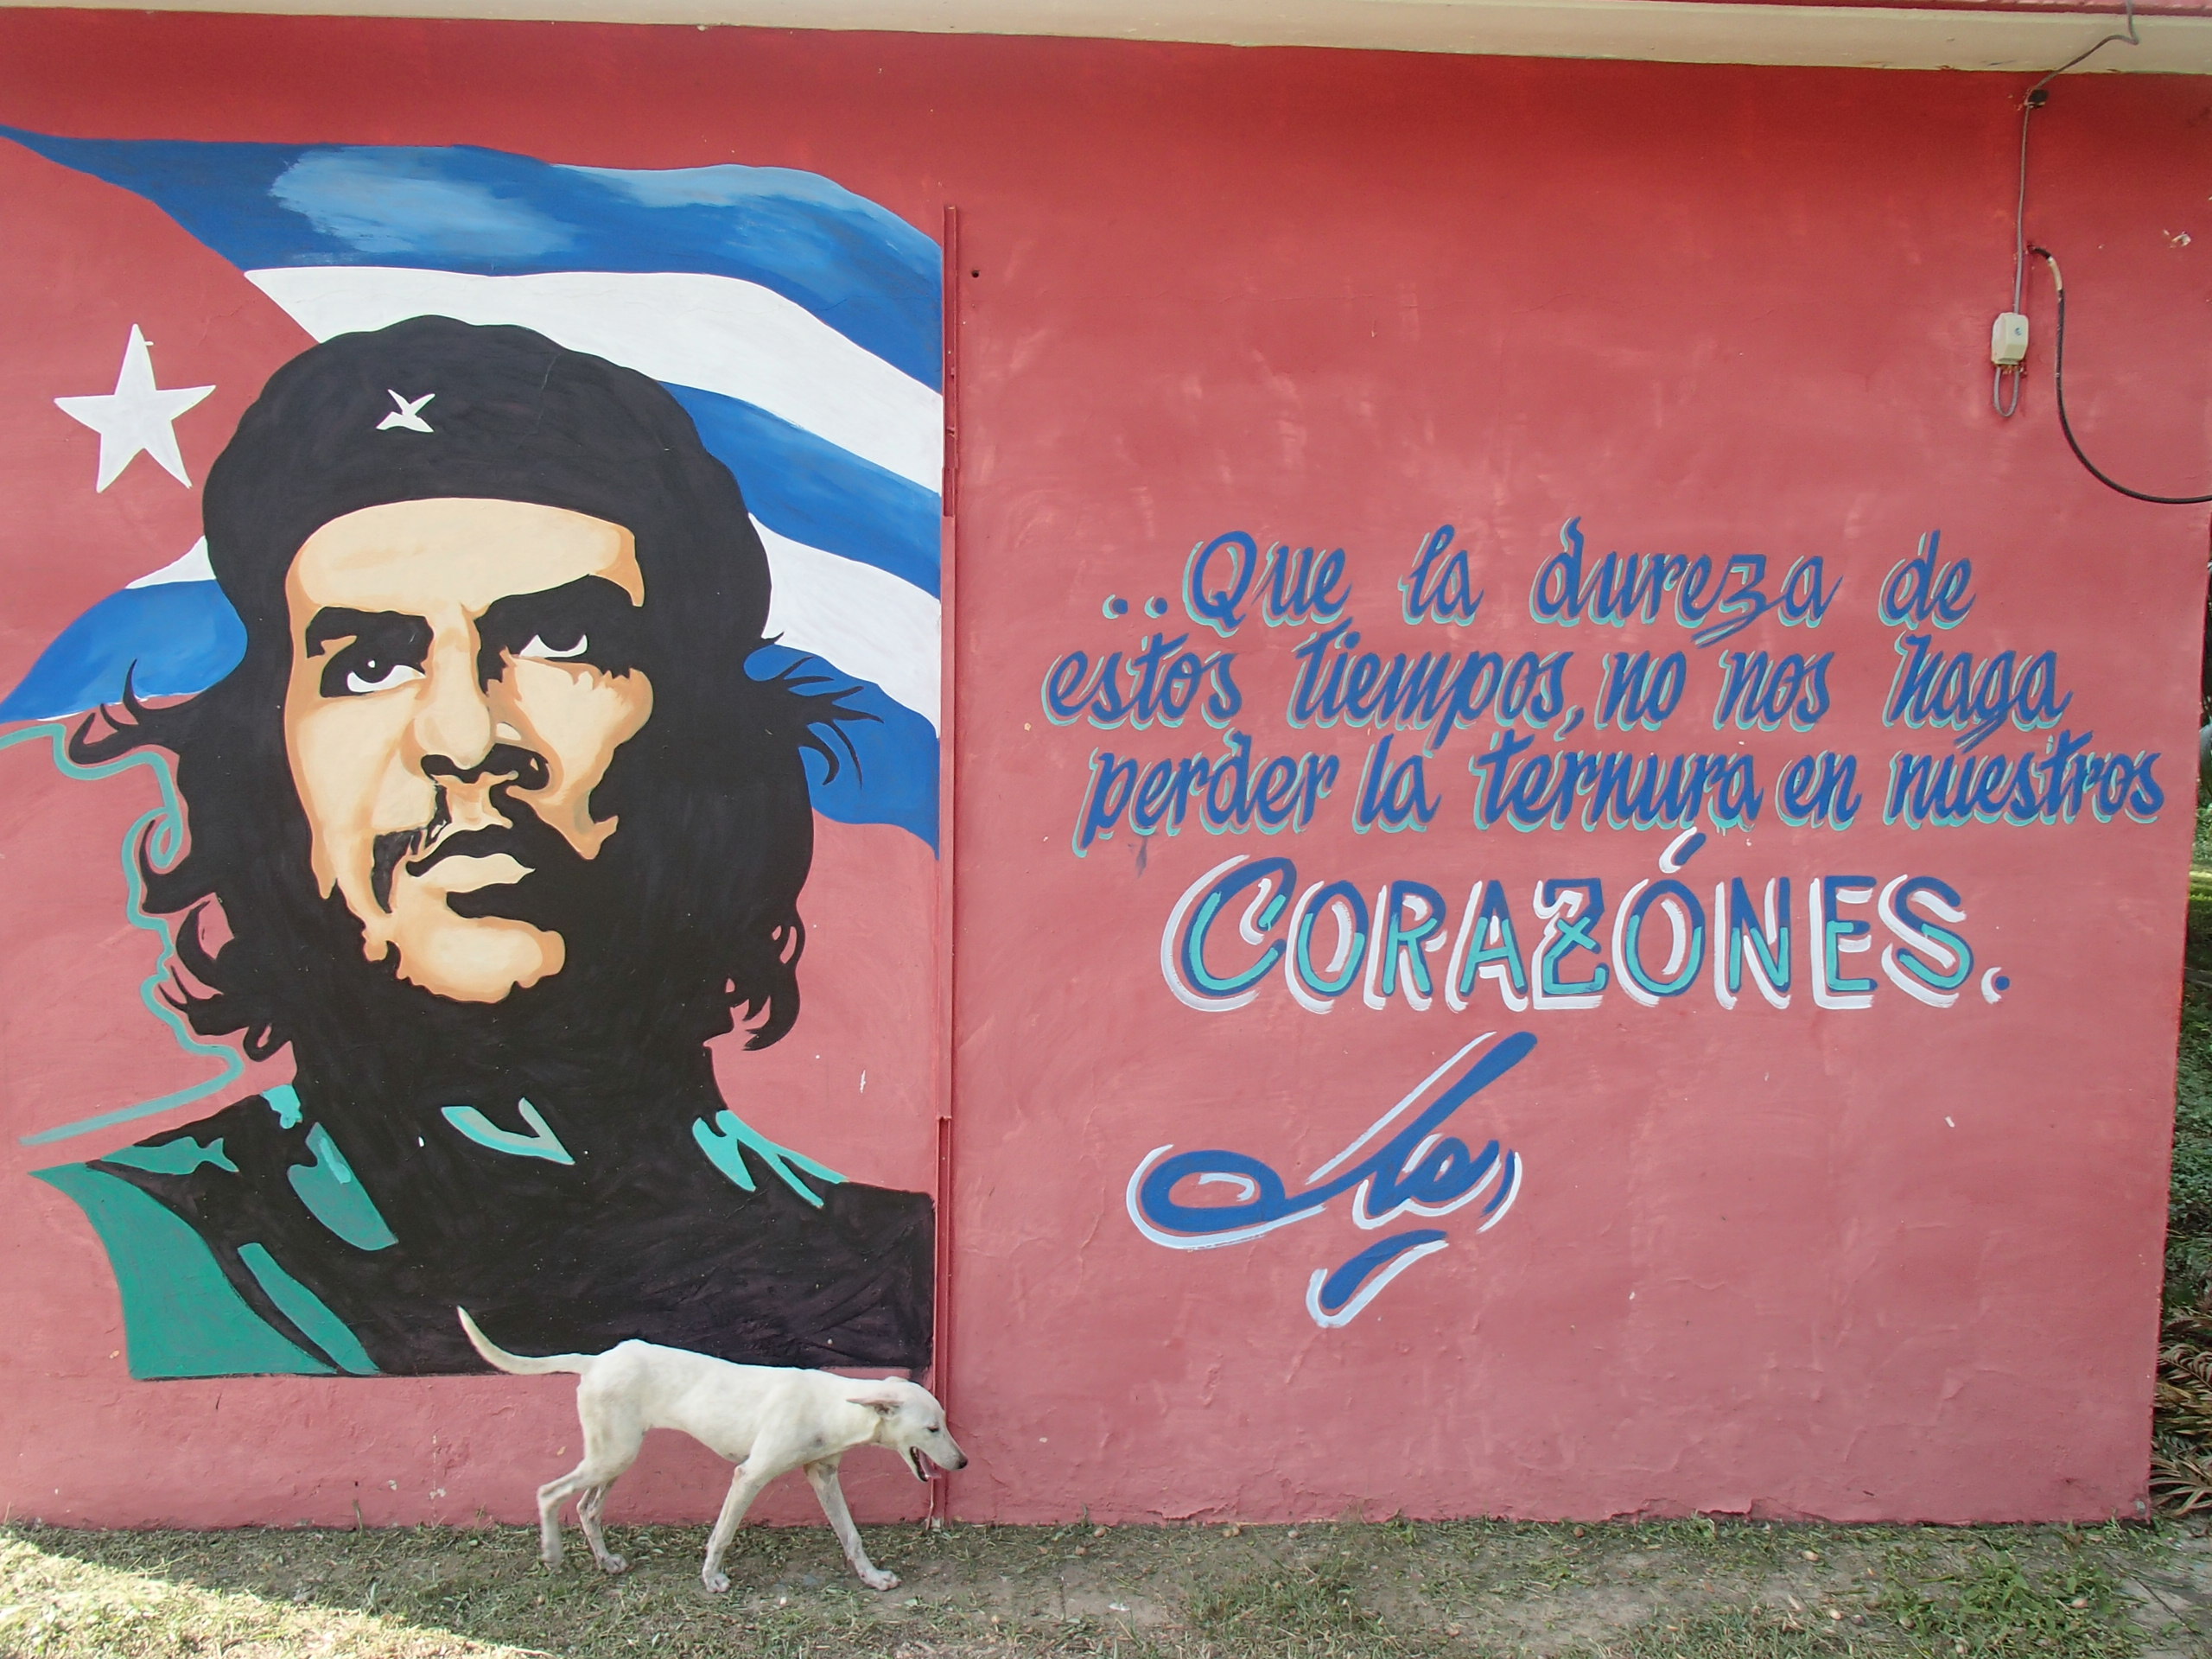 Les représentations de Che Guevara ponctuent le voyage ©Manon Le Pelley